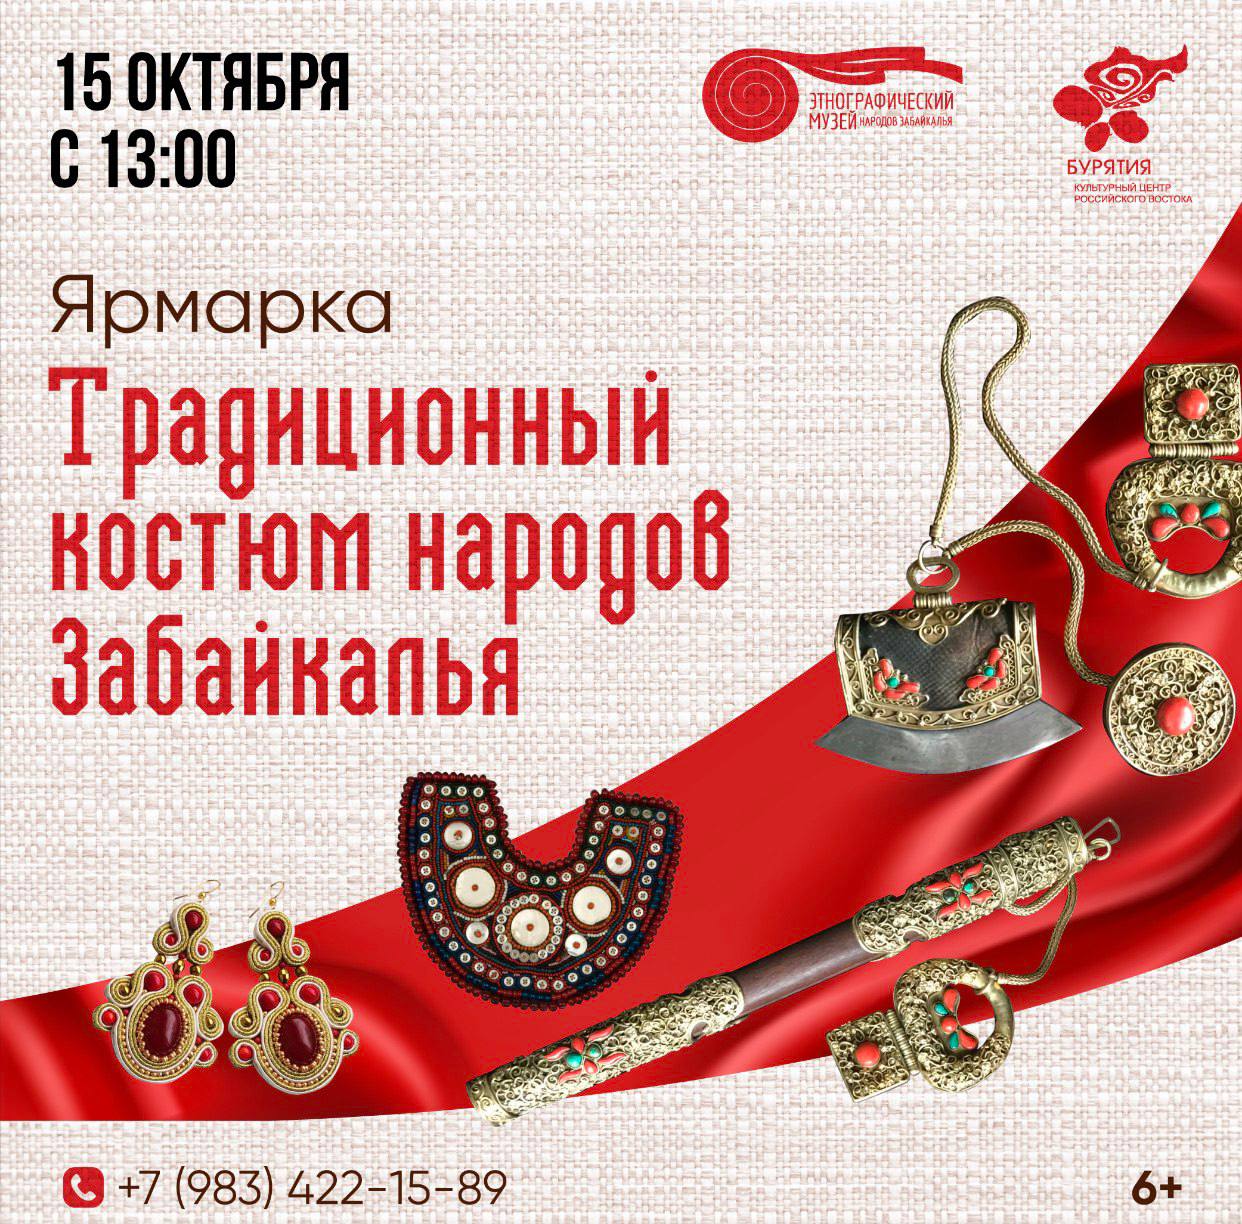 Фото В Этнографическом музее Улан-Удэ пройдет выставка-ярмарка «Традиционный костюм народов Забайкалья» (6+)